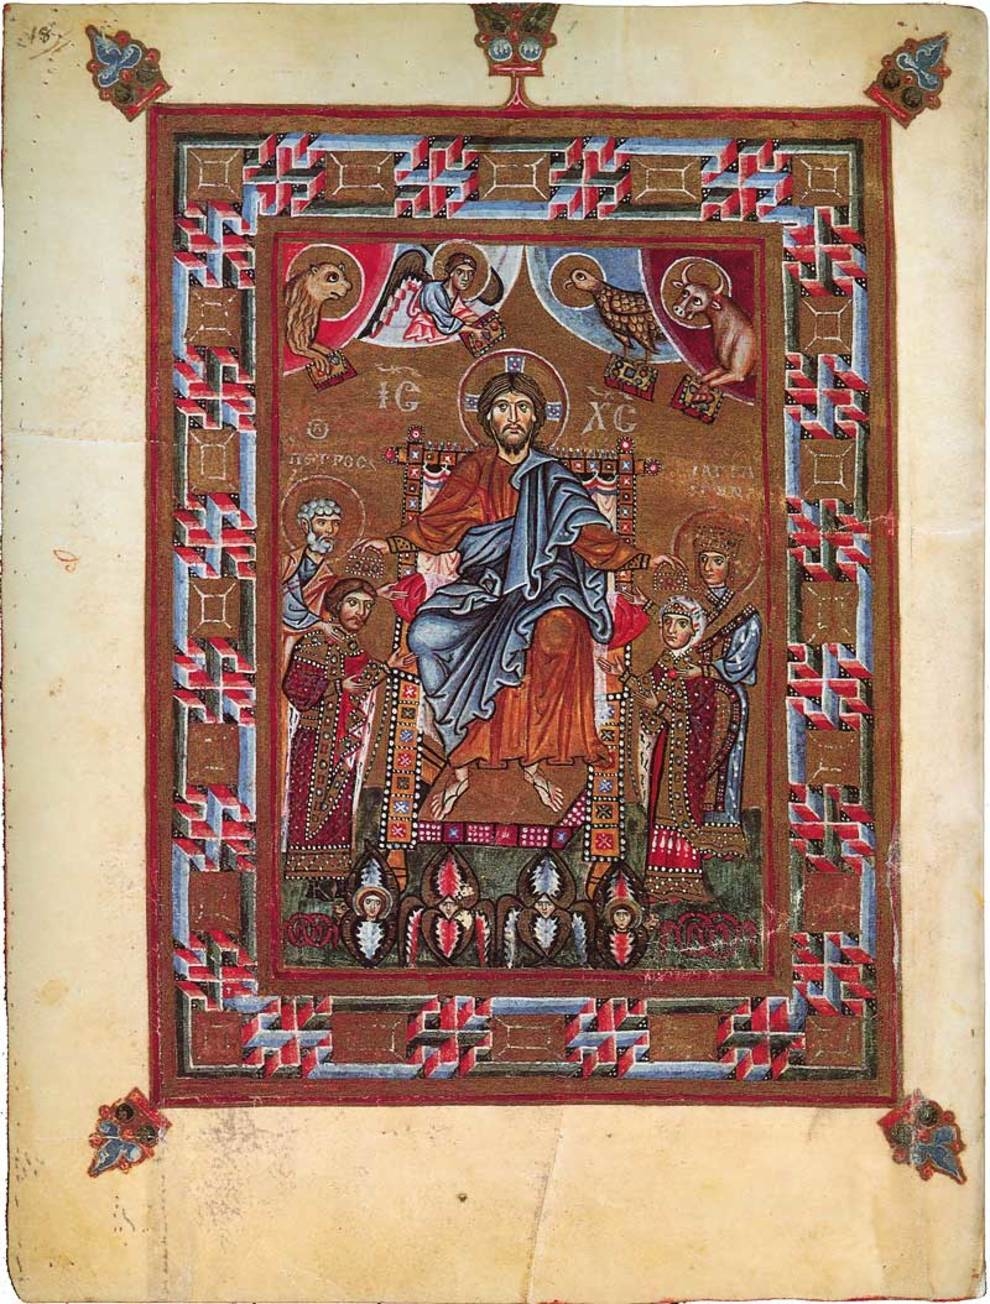 Кодекс Гертруды: средневековая иллюстрированная рукопись, сохранившаяся до наших дней